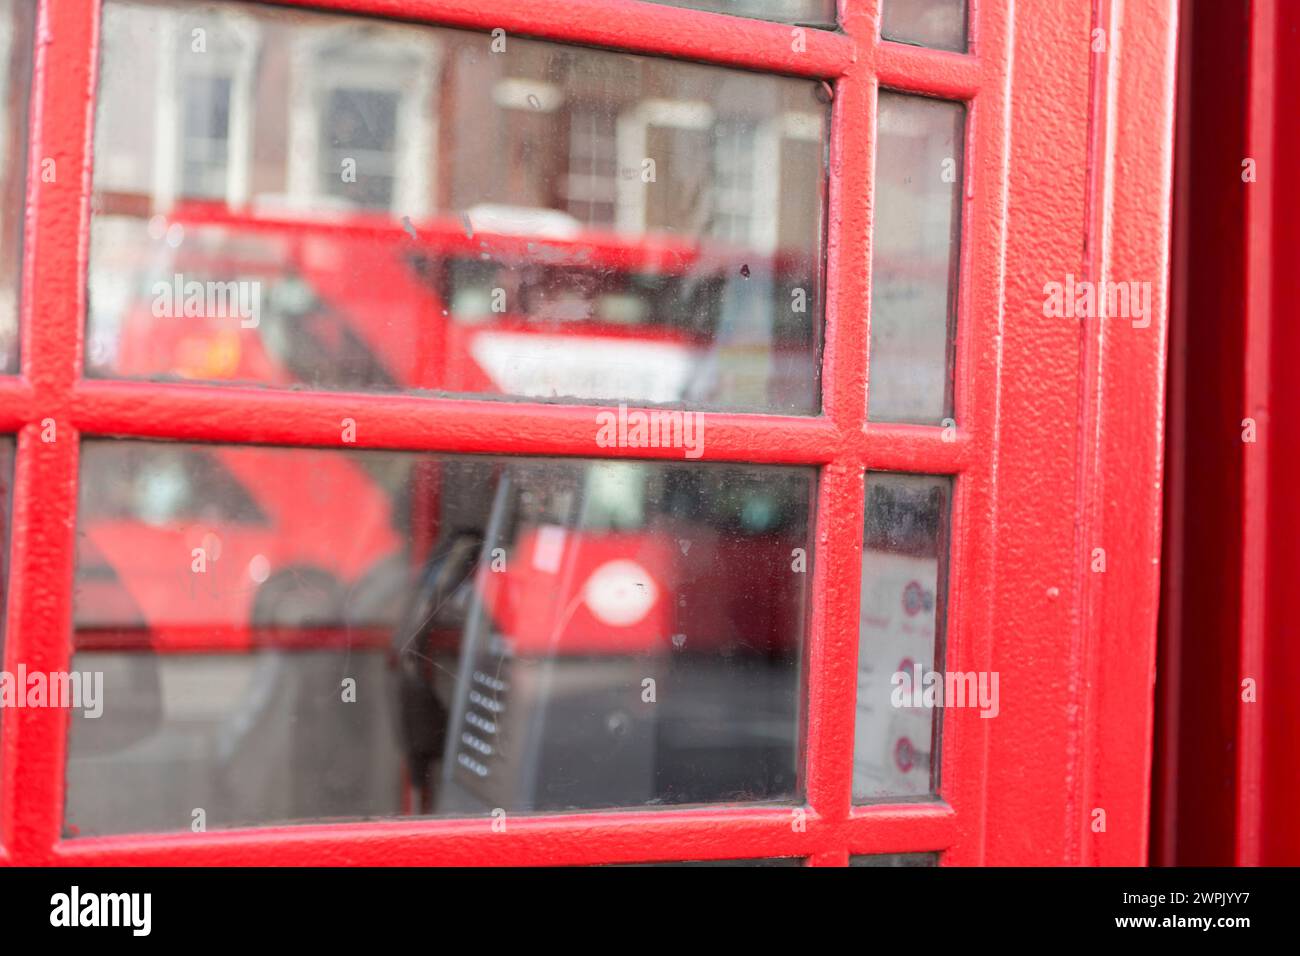 Royaume-Uni, Londres, reflet du London bus dans les fenêtres de la cabine téléphonique. Banque D'Images